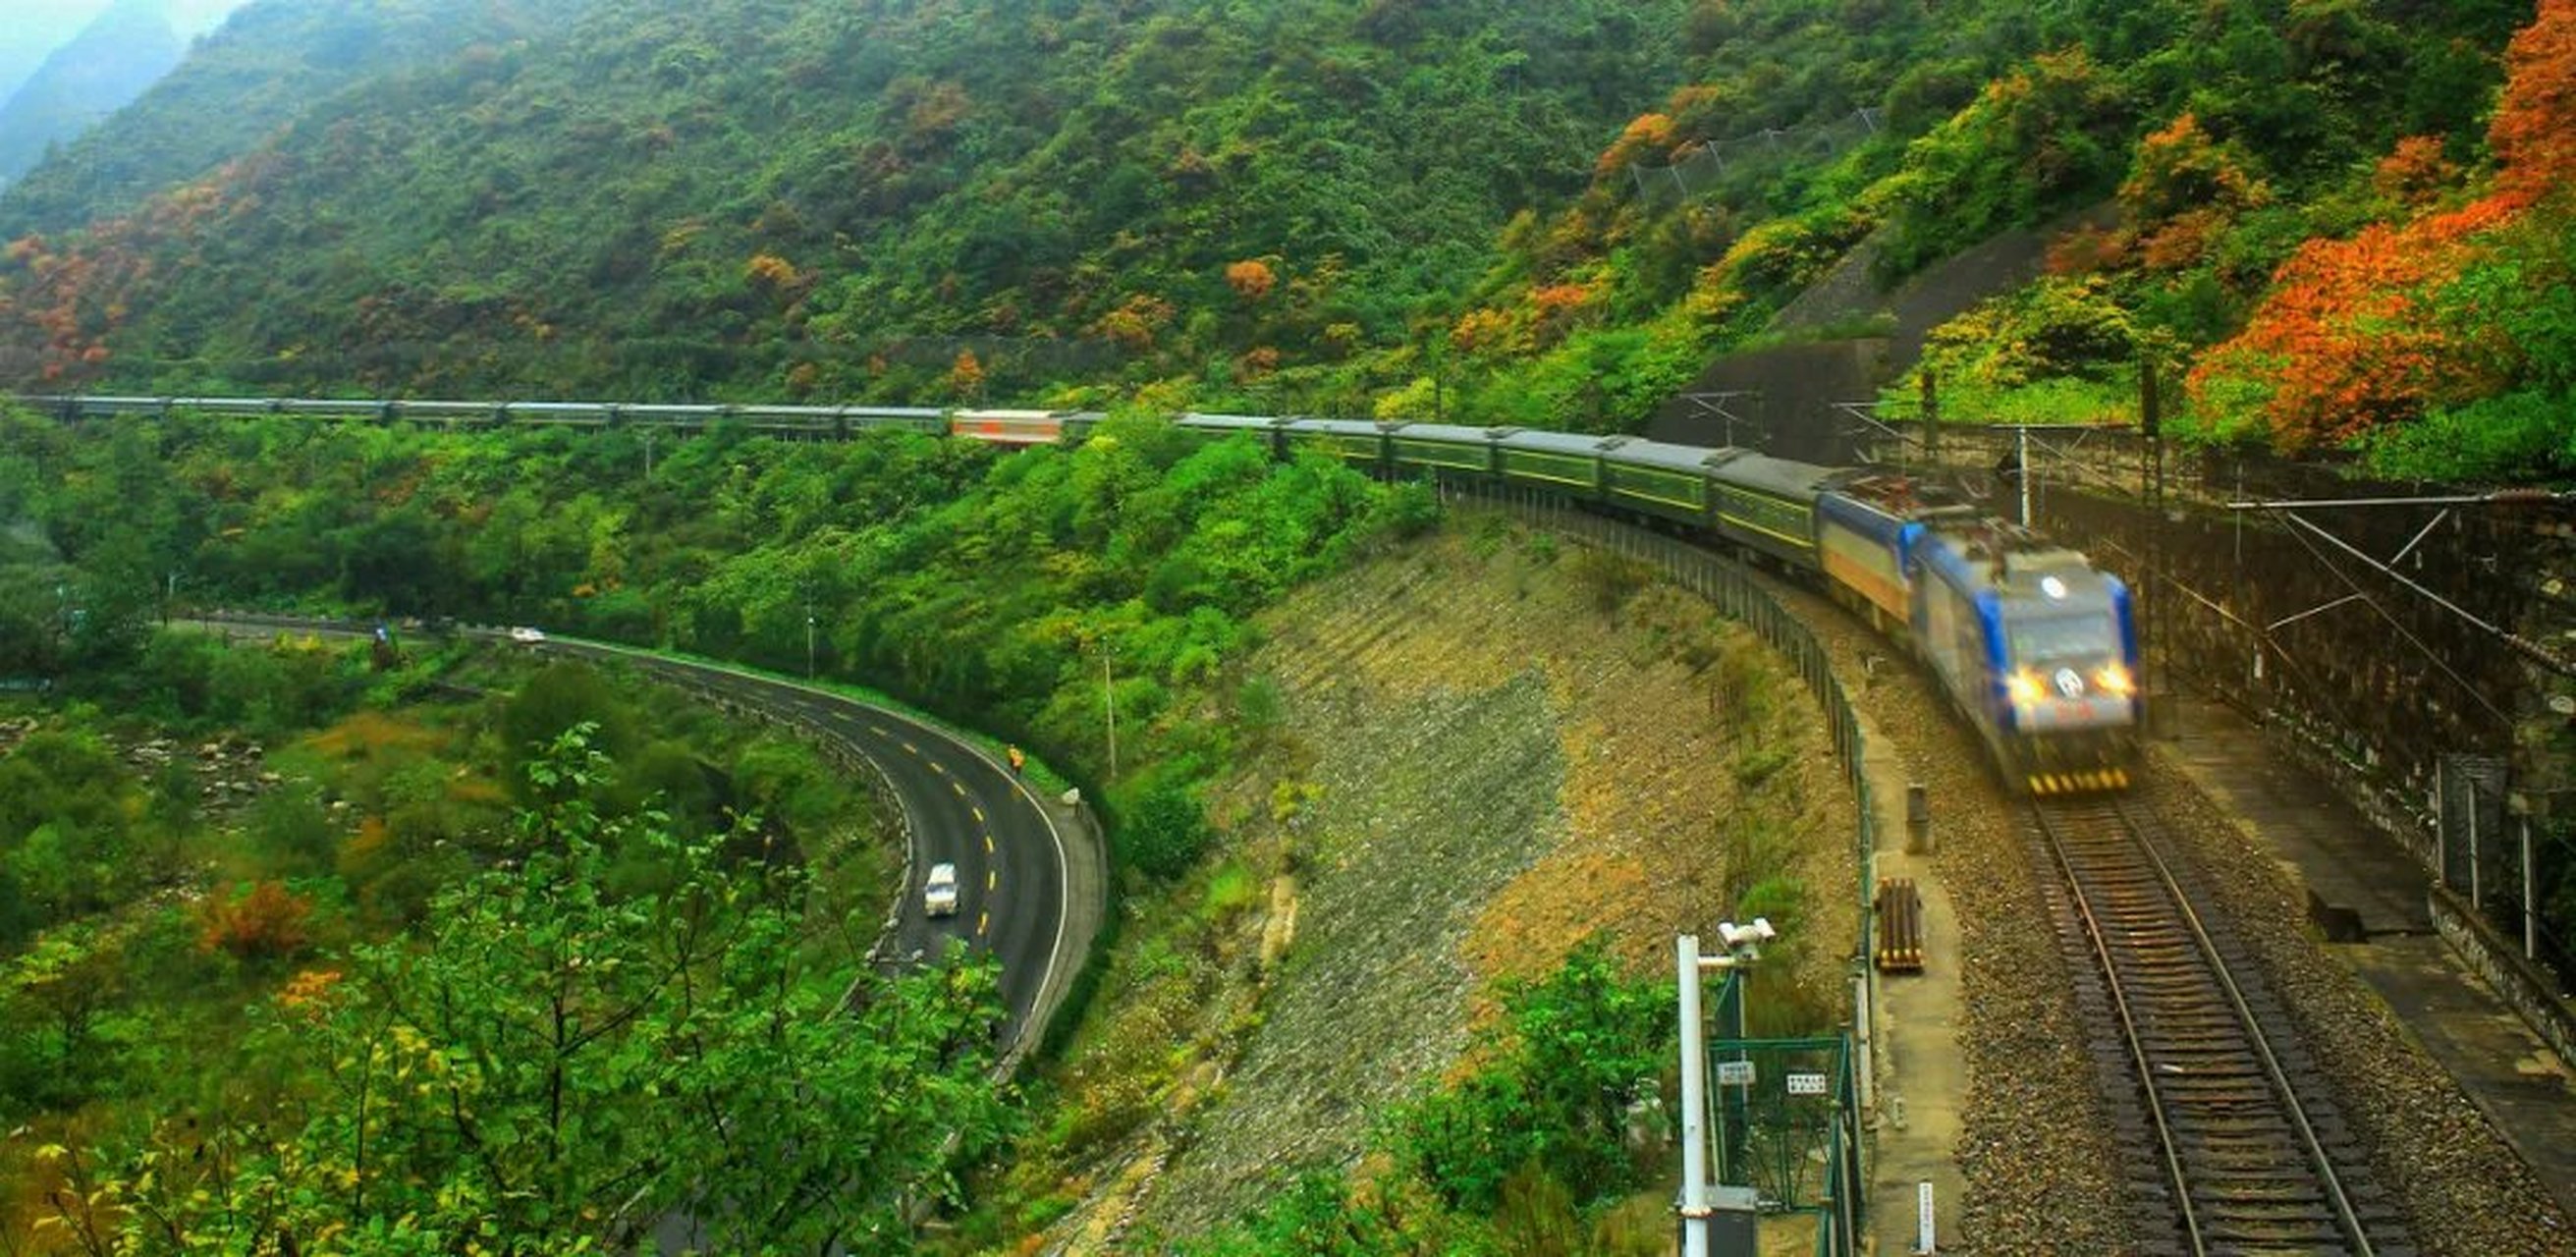 #万物皆可云# 宝成铁路是中国一条从陕西省宝鸡市通往四川省成都市的